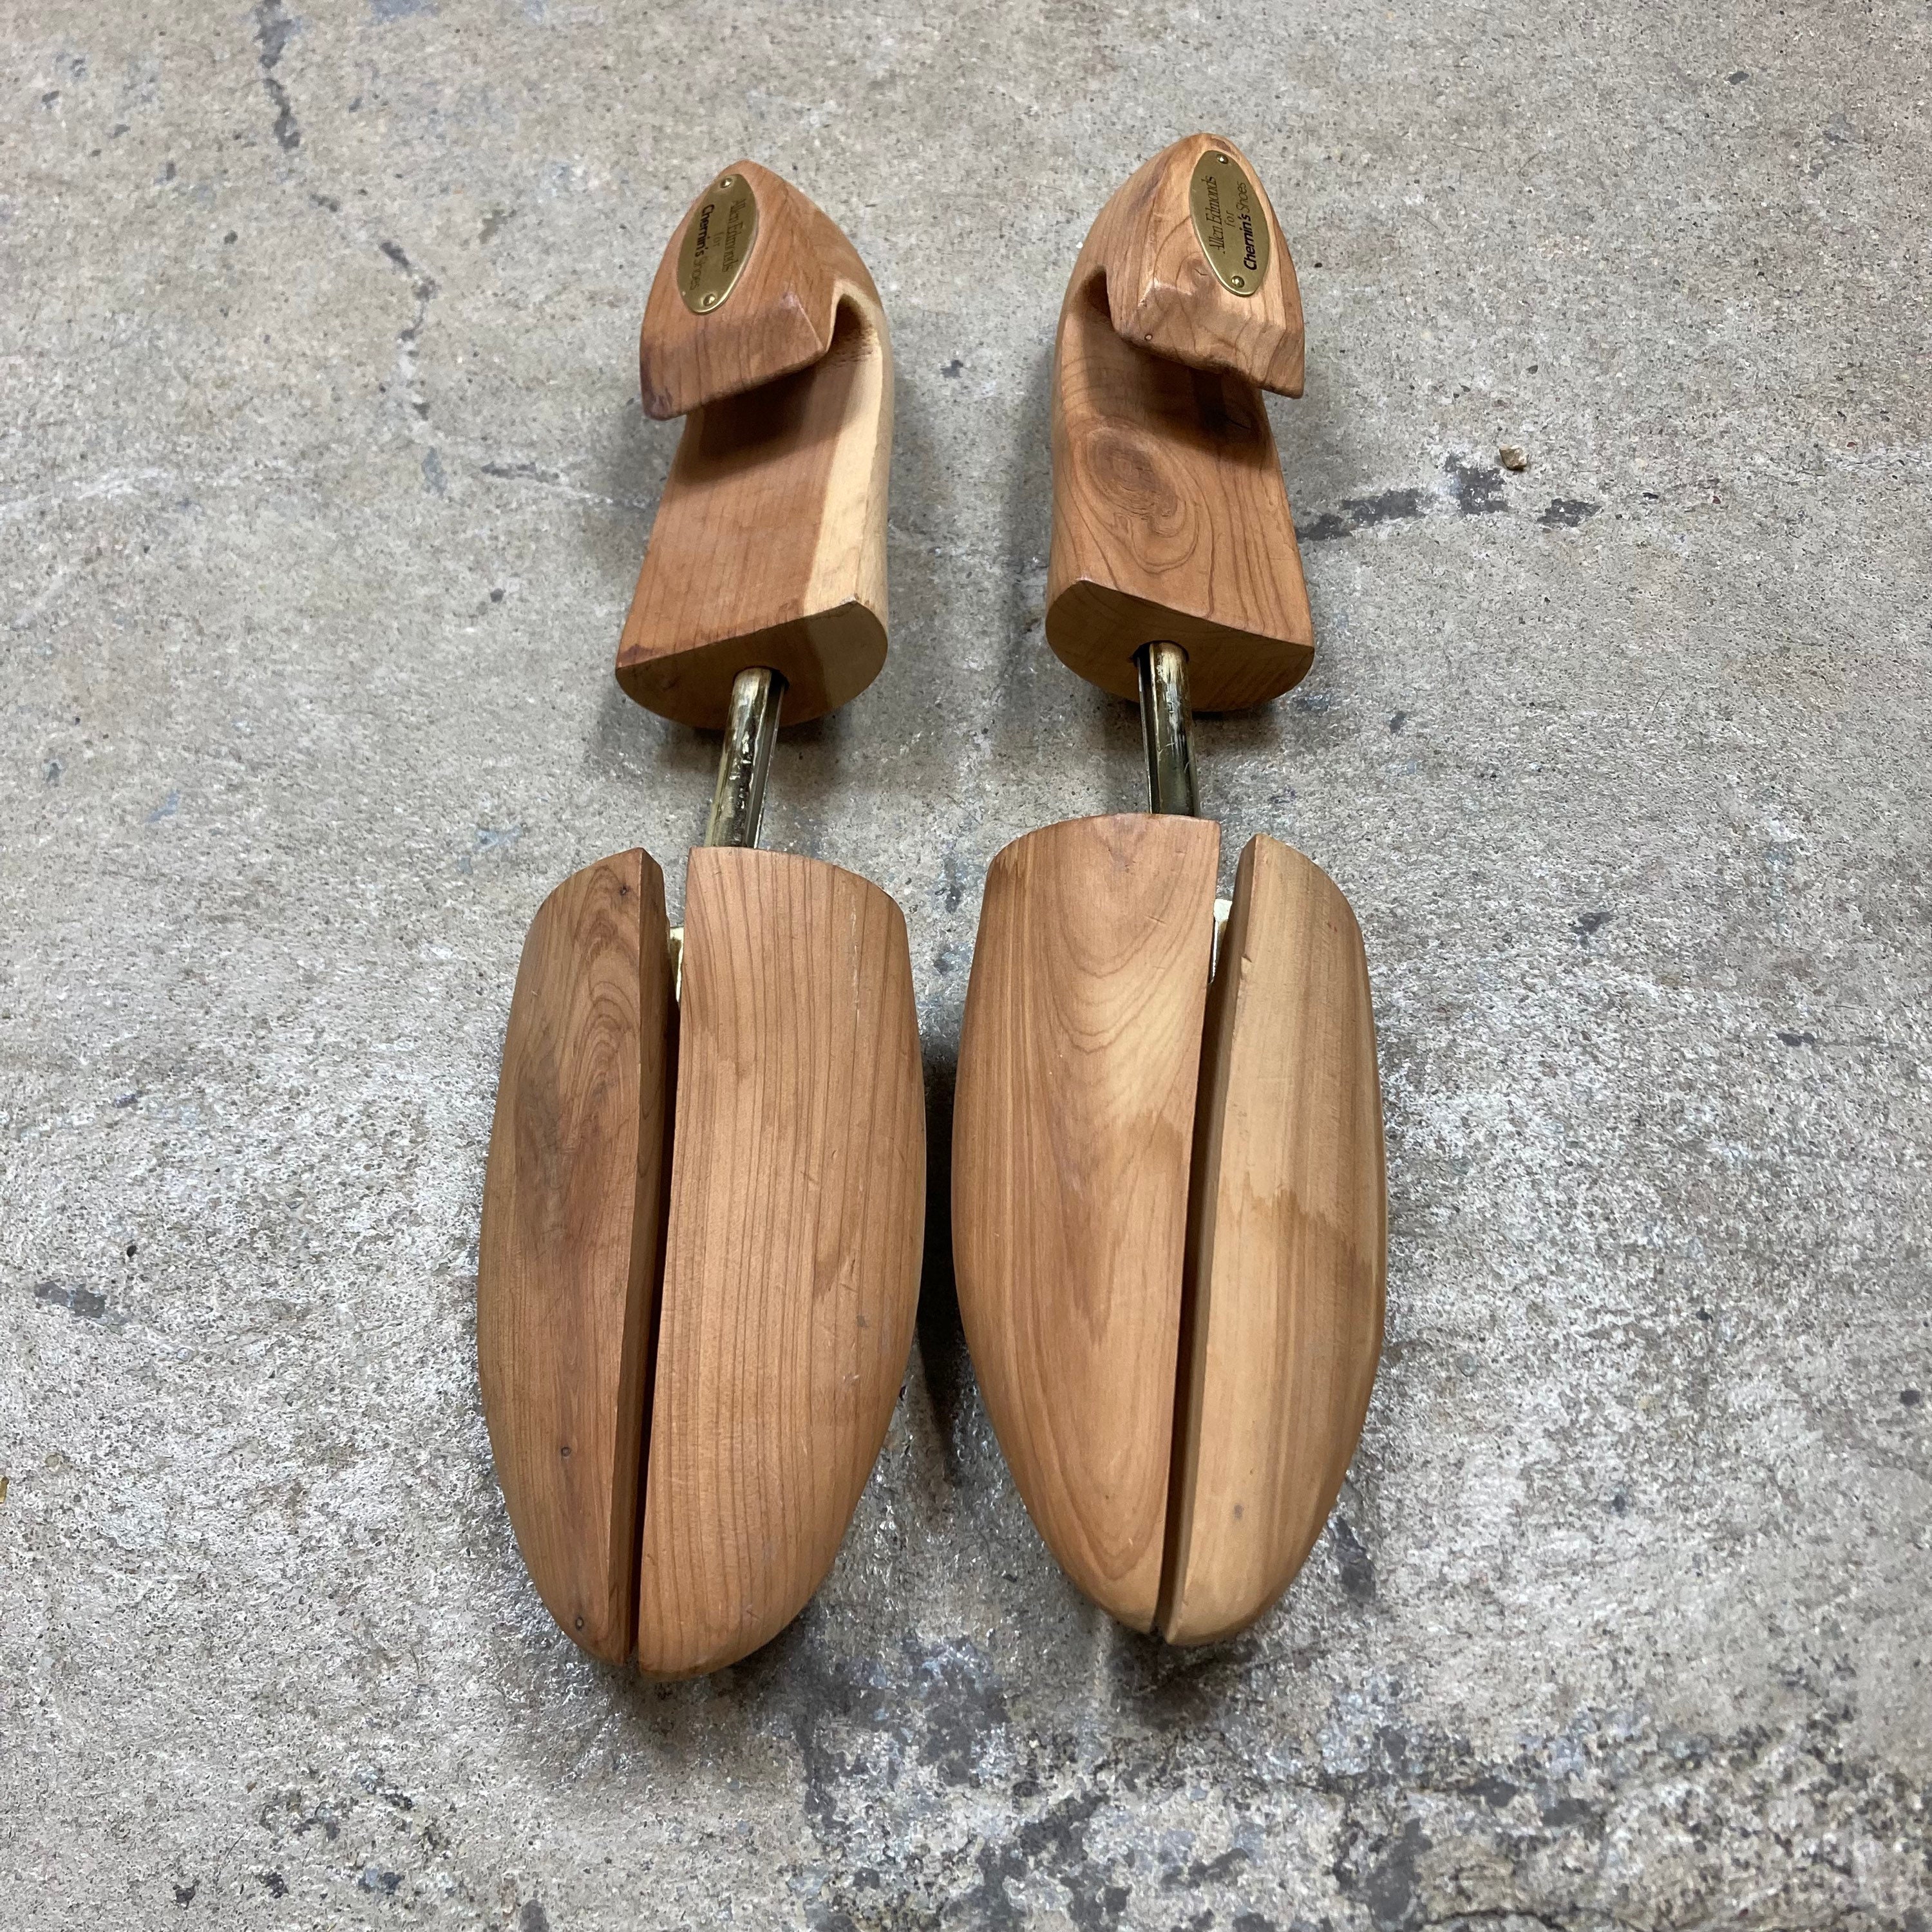 logei® 1 Pair Cedar Wood Shoe Tree Shoe Stretcher Shaper Size 35-36 